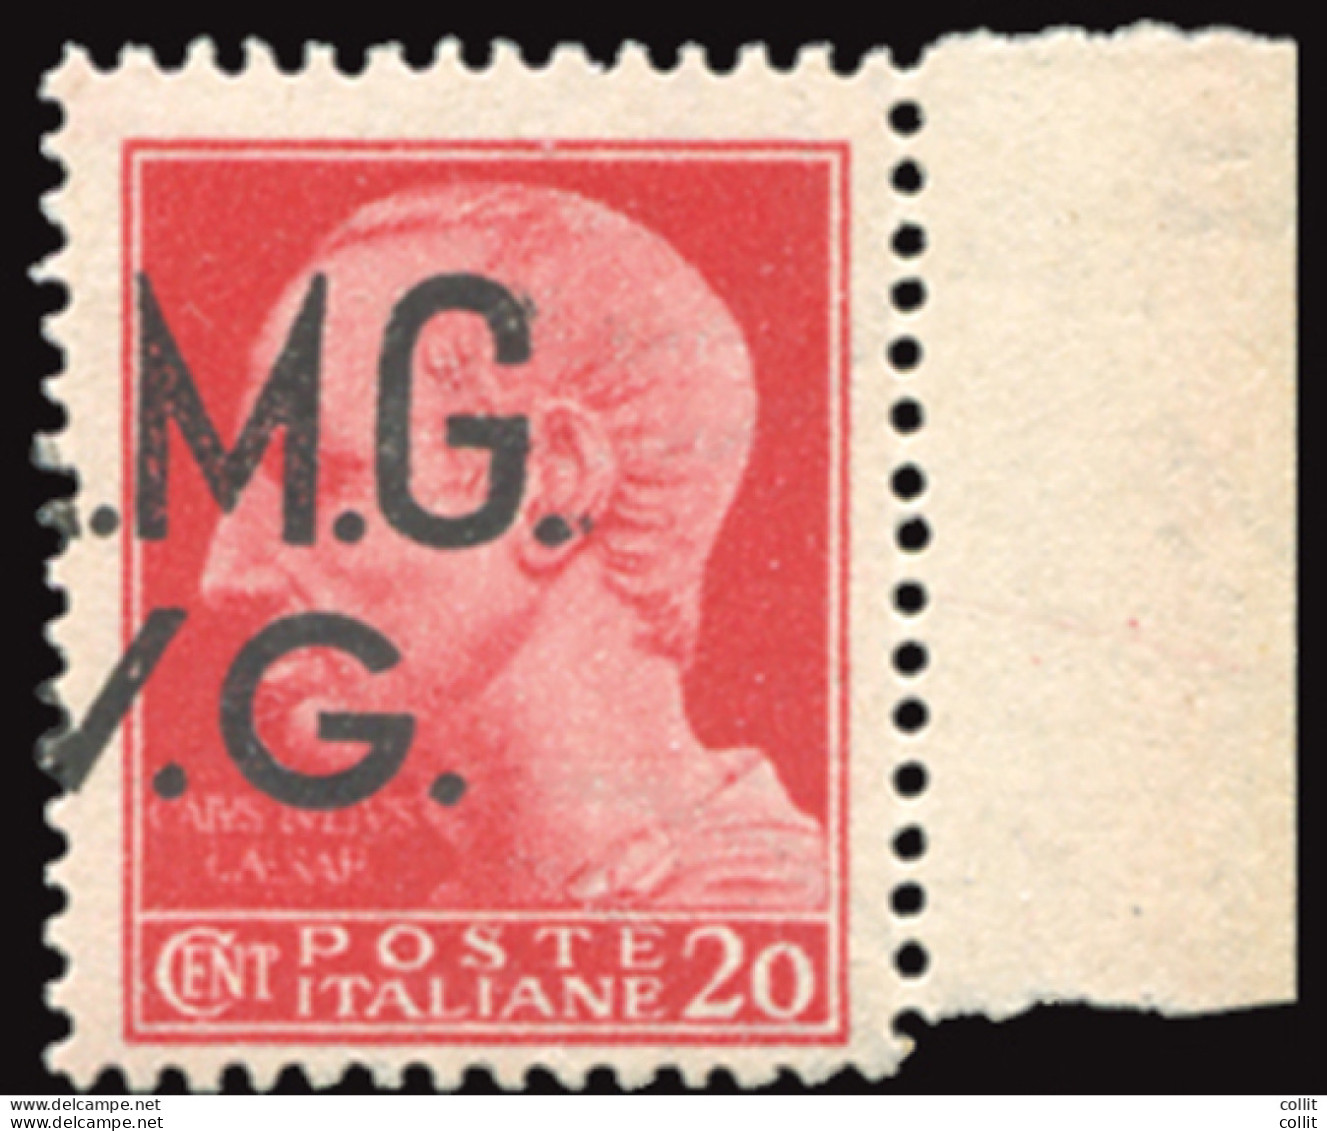 AMG. VG. - Cent. 20 Varietà Soprastampa Solo M.G./V.G. - Ungebraucht